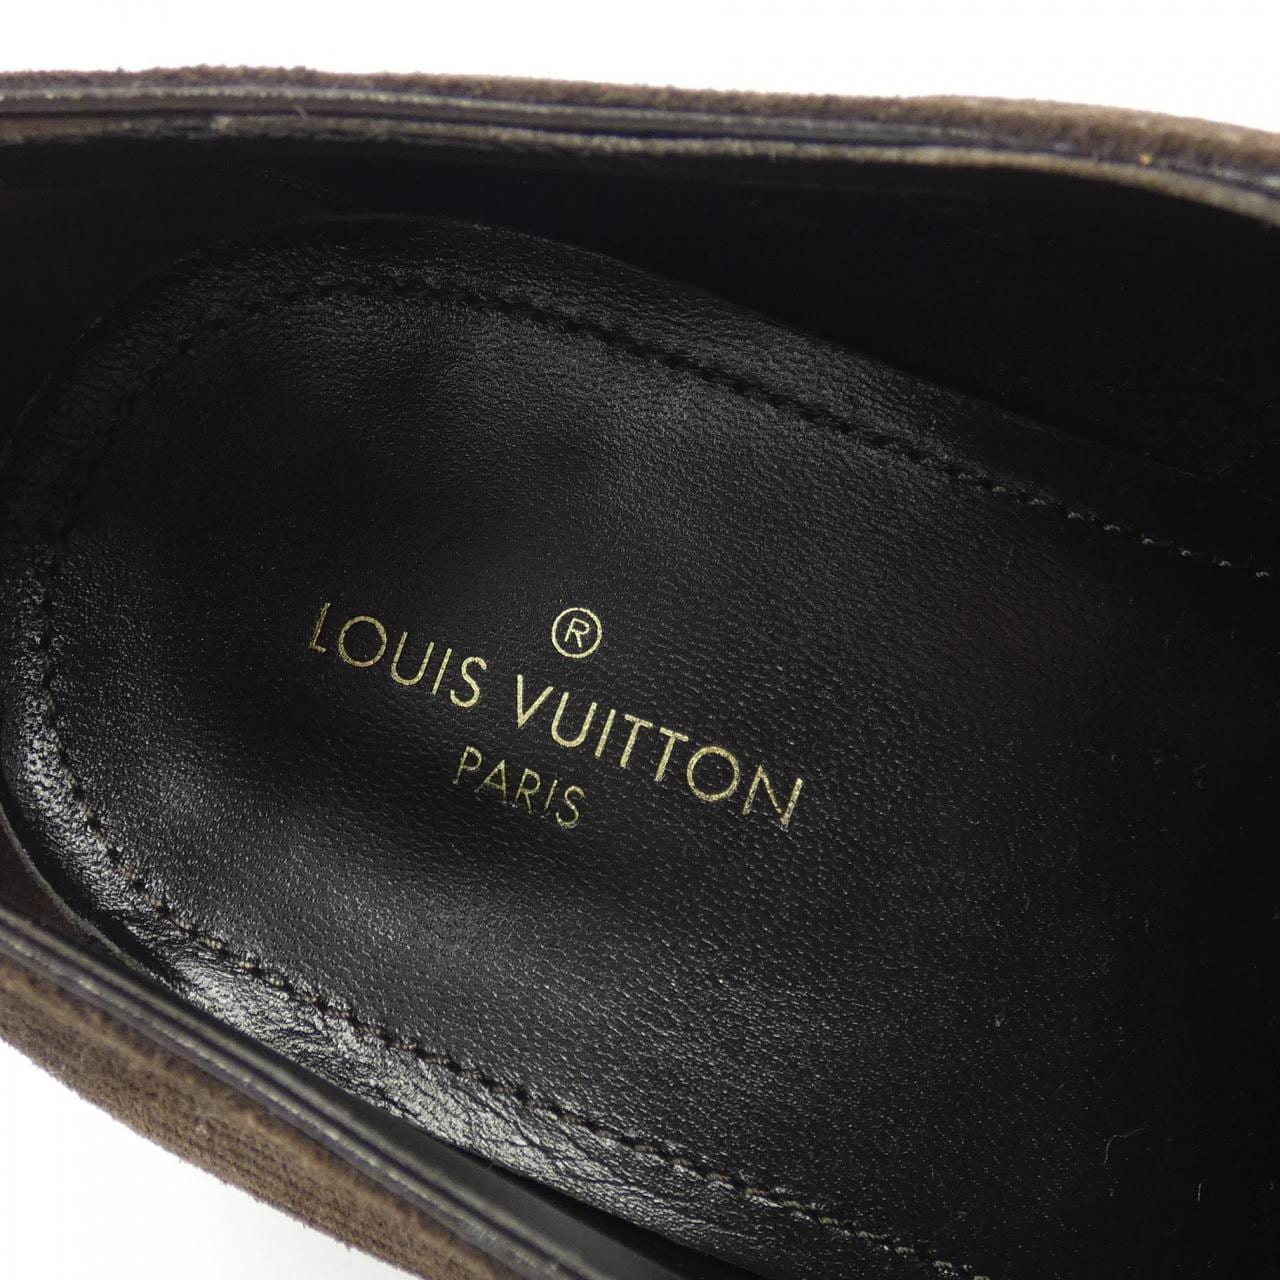 LOUIS VUITTON VUITTON dress shoes